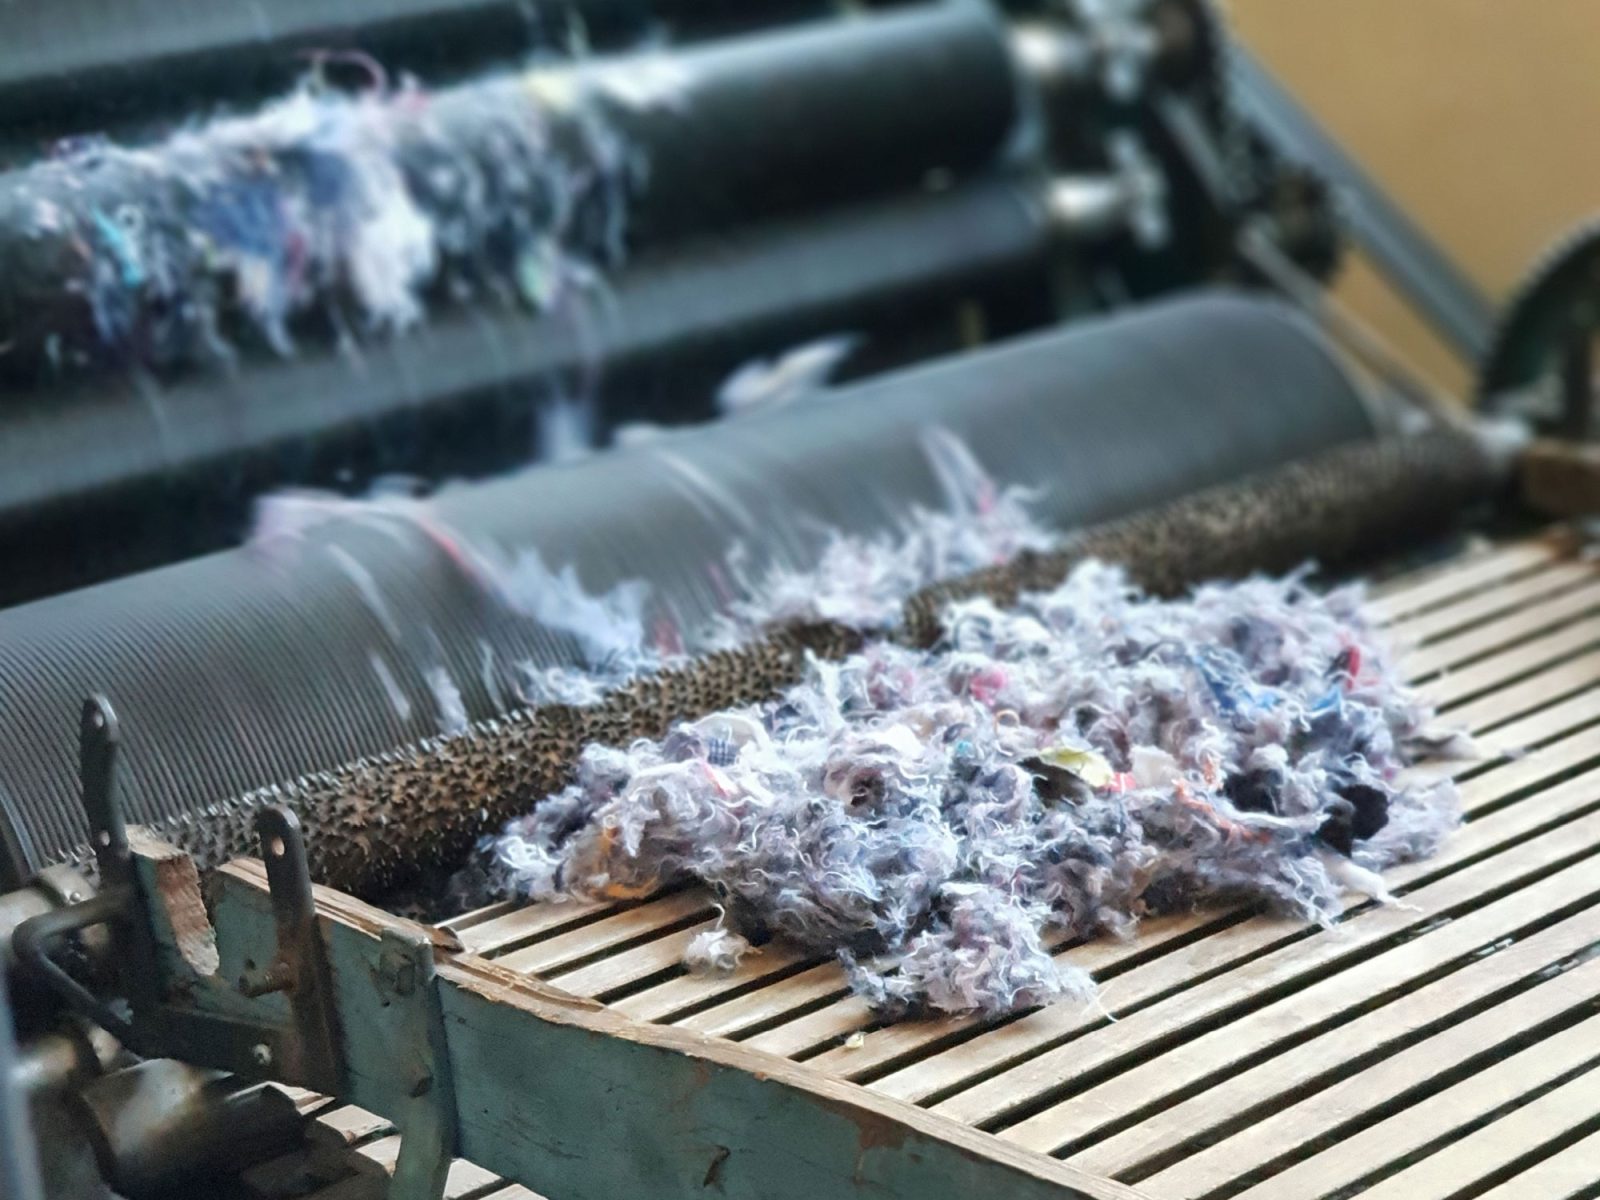 Närbild på maskin som river textil till småbitar.